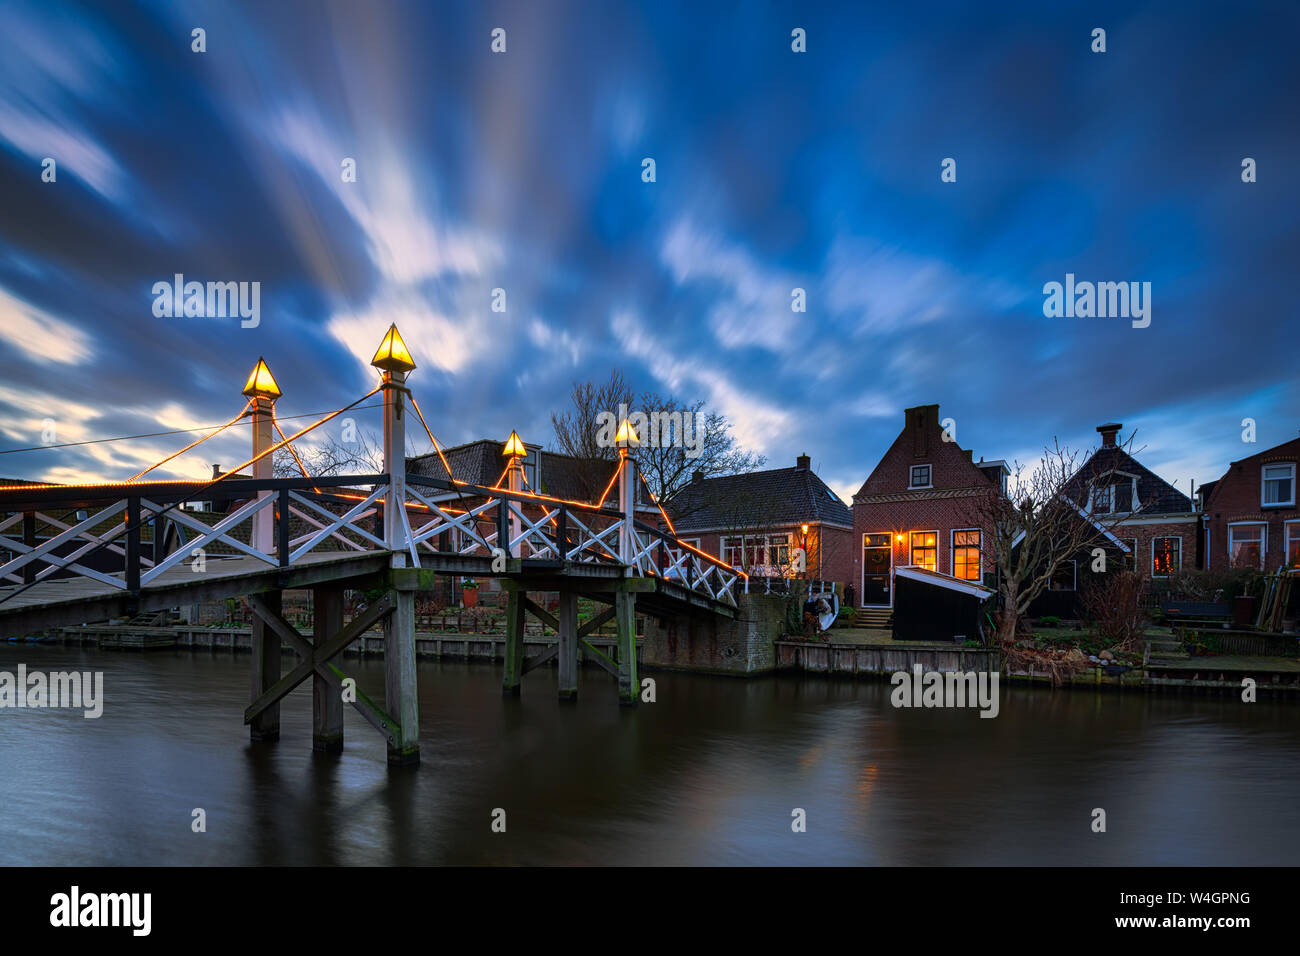 Eine historische Stadt und beliebtes Reiseziel in den Niederlanden am IJsselmeer mit alten Häusern und Kanäle - Heerenveen, Niederlande Stockfoto